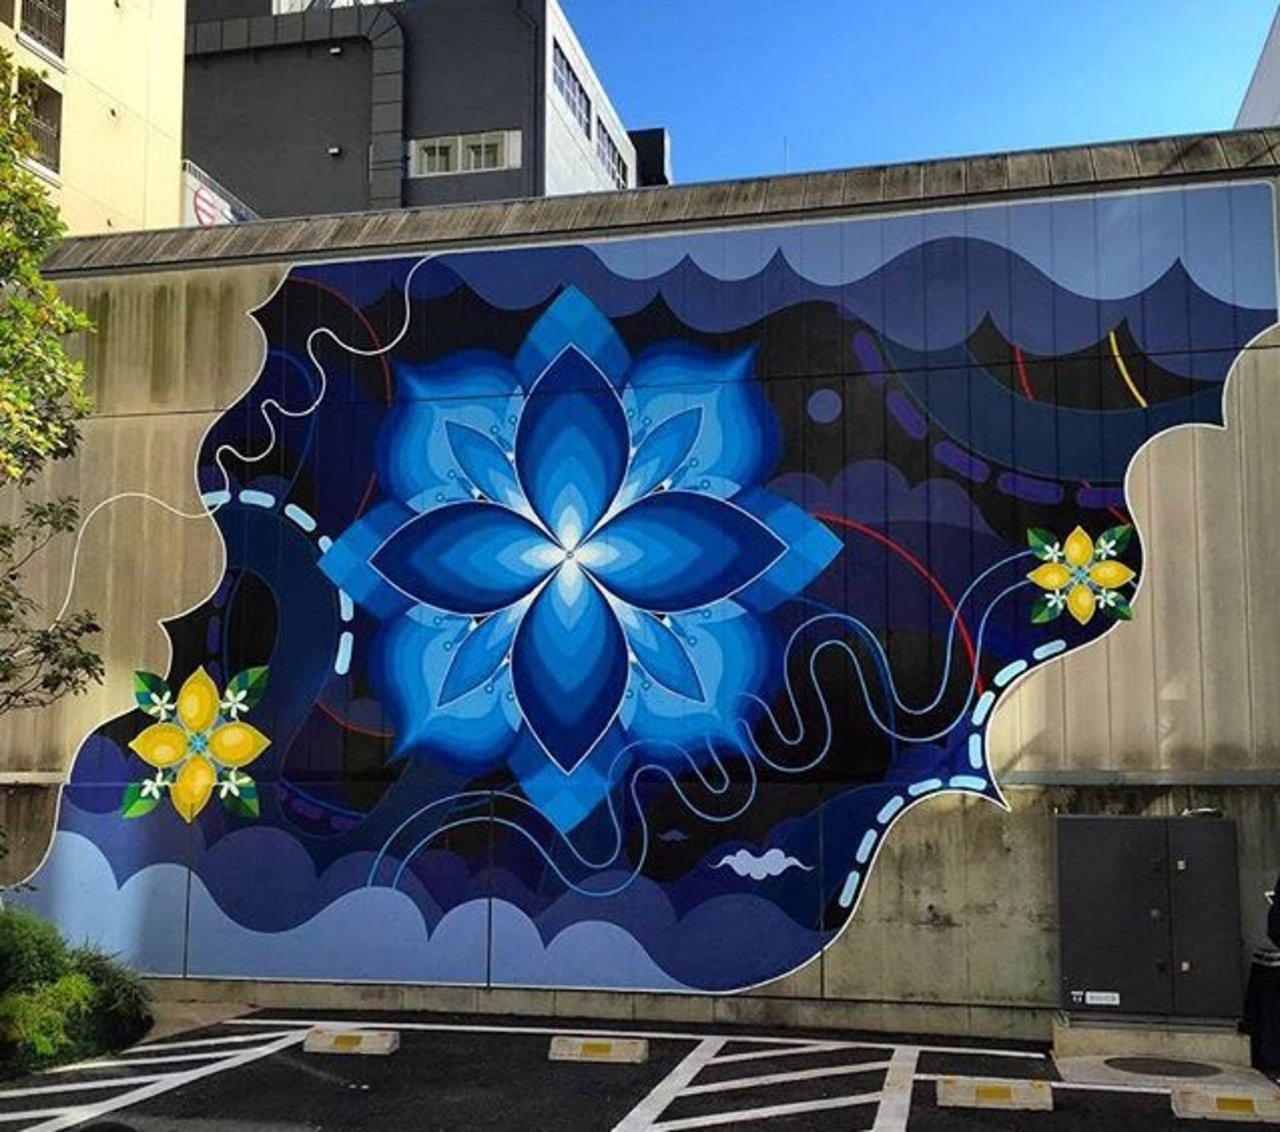 RT @buzz_sandyltn: New Street Art by htzk, kami_htzk + sasu_lyri 

#art #graffiti #mural #streetart https://t.co/4vGVI8l8pk